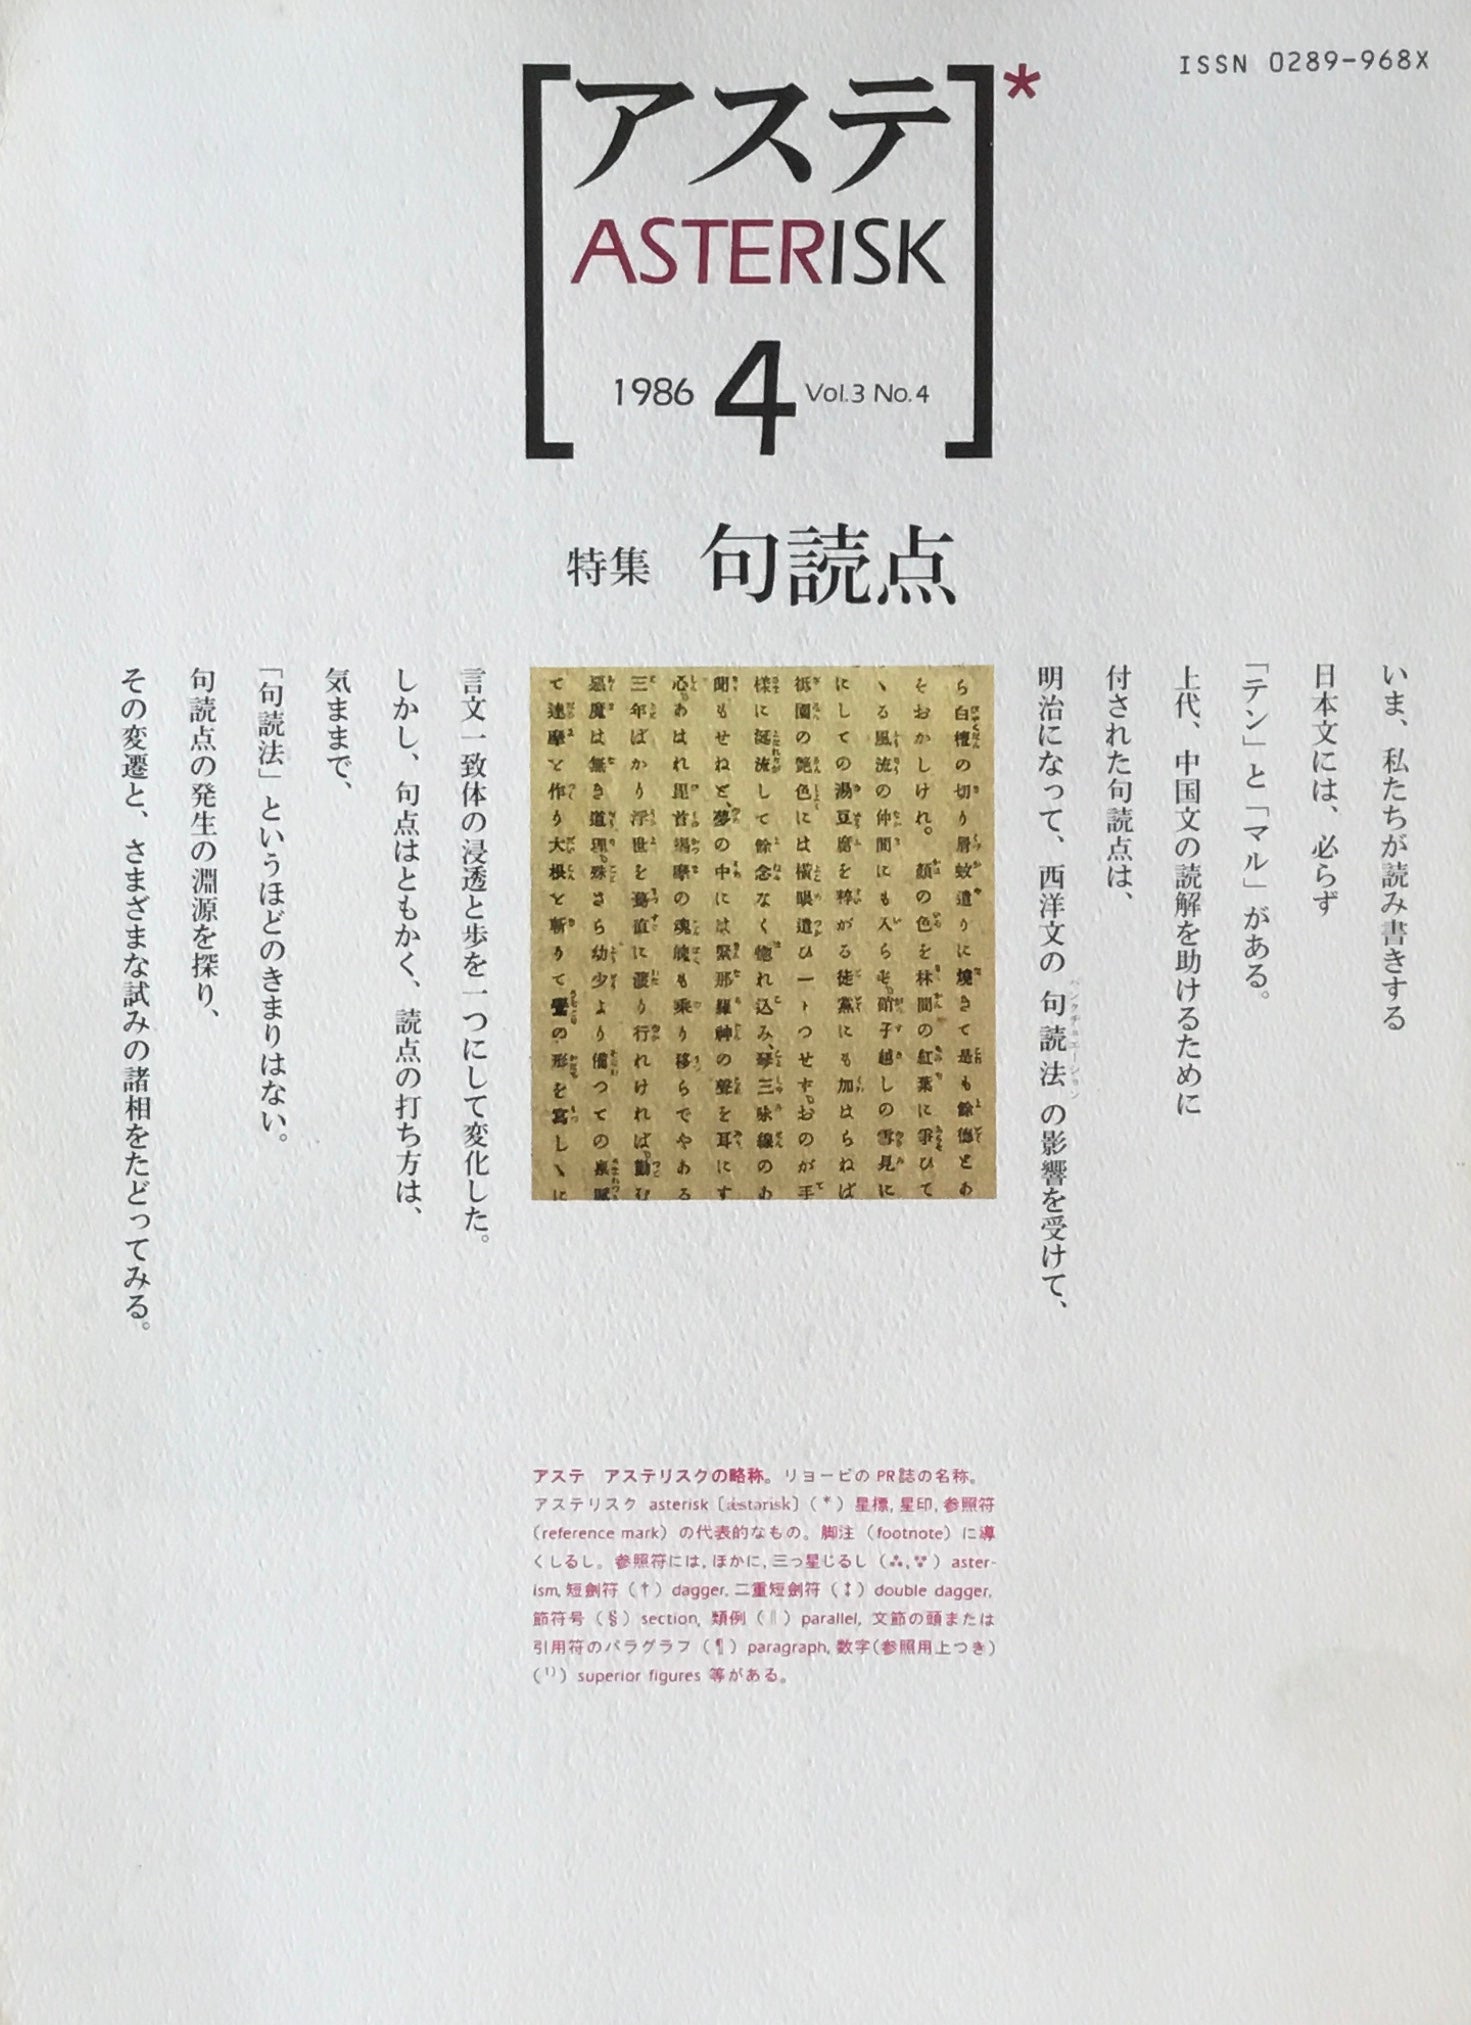 アステ第4号　1986年 Vol.3 No.4　特集 句読点